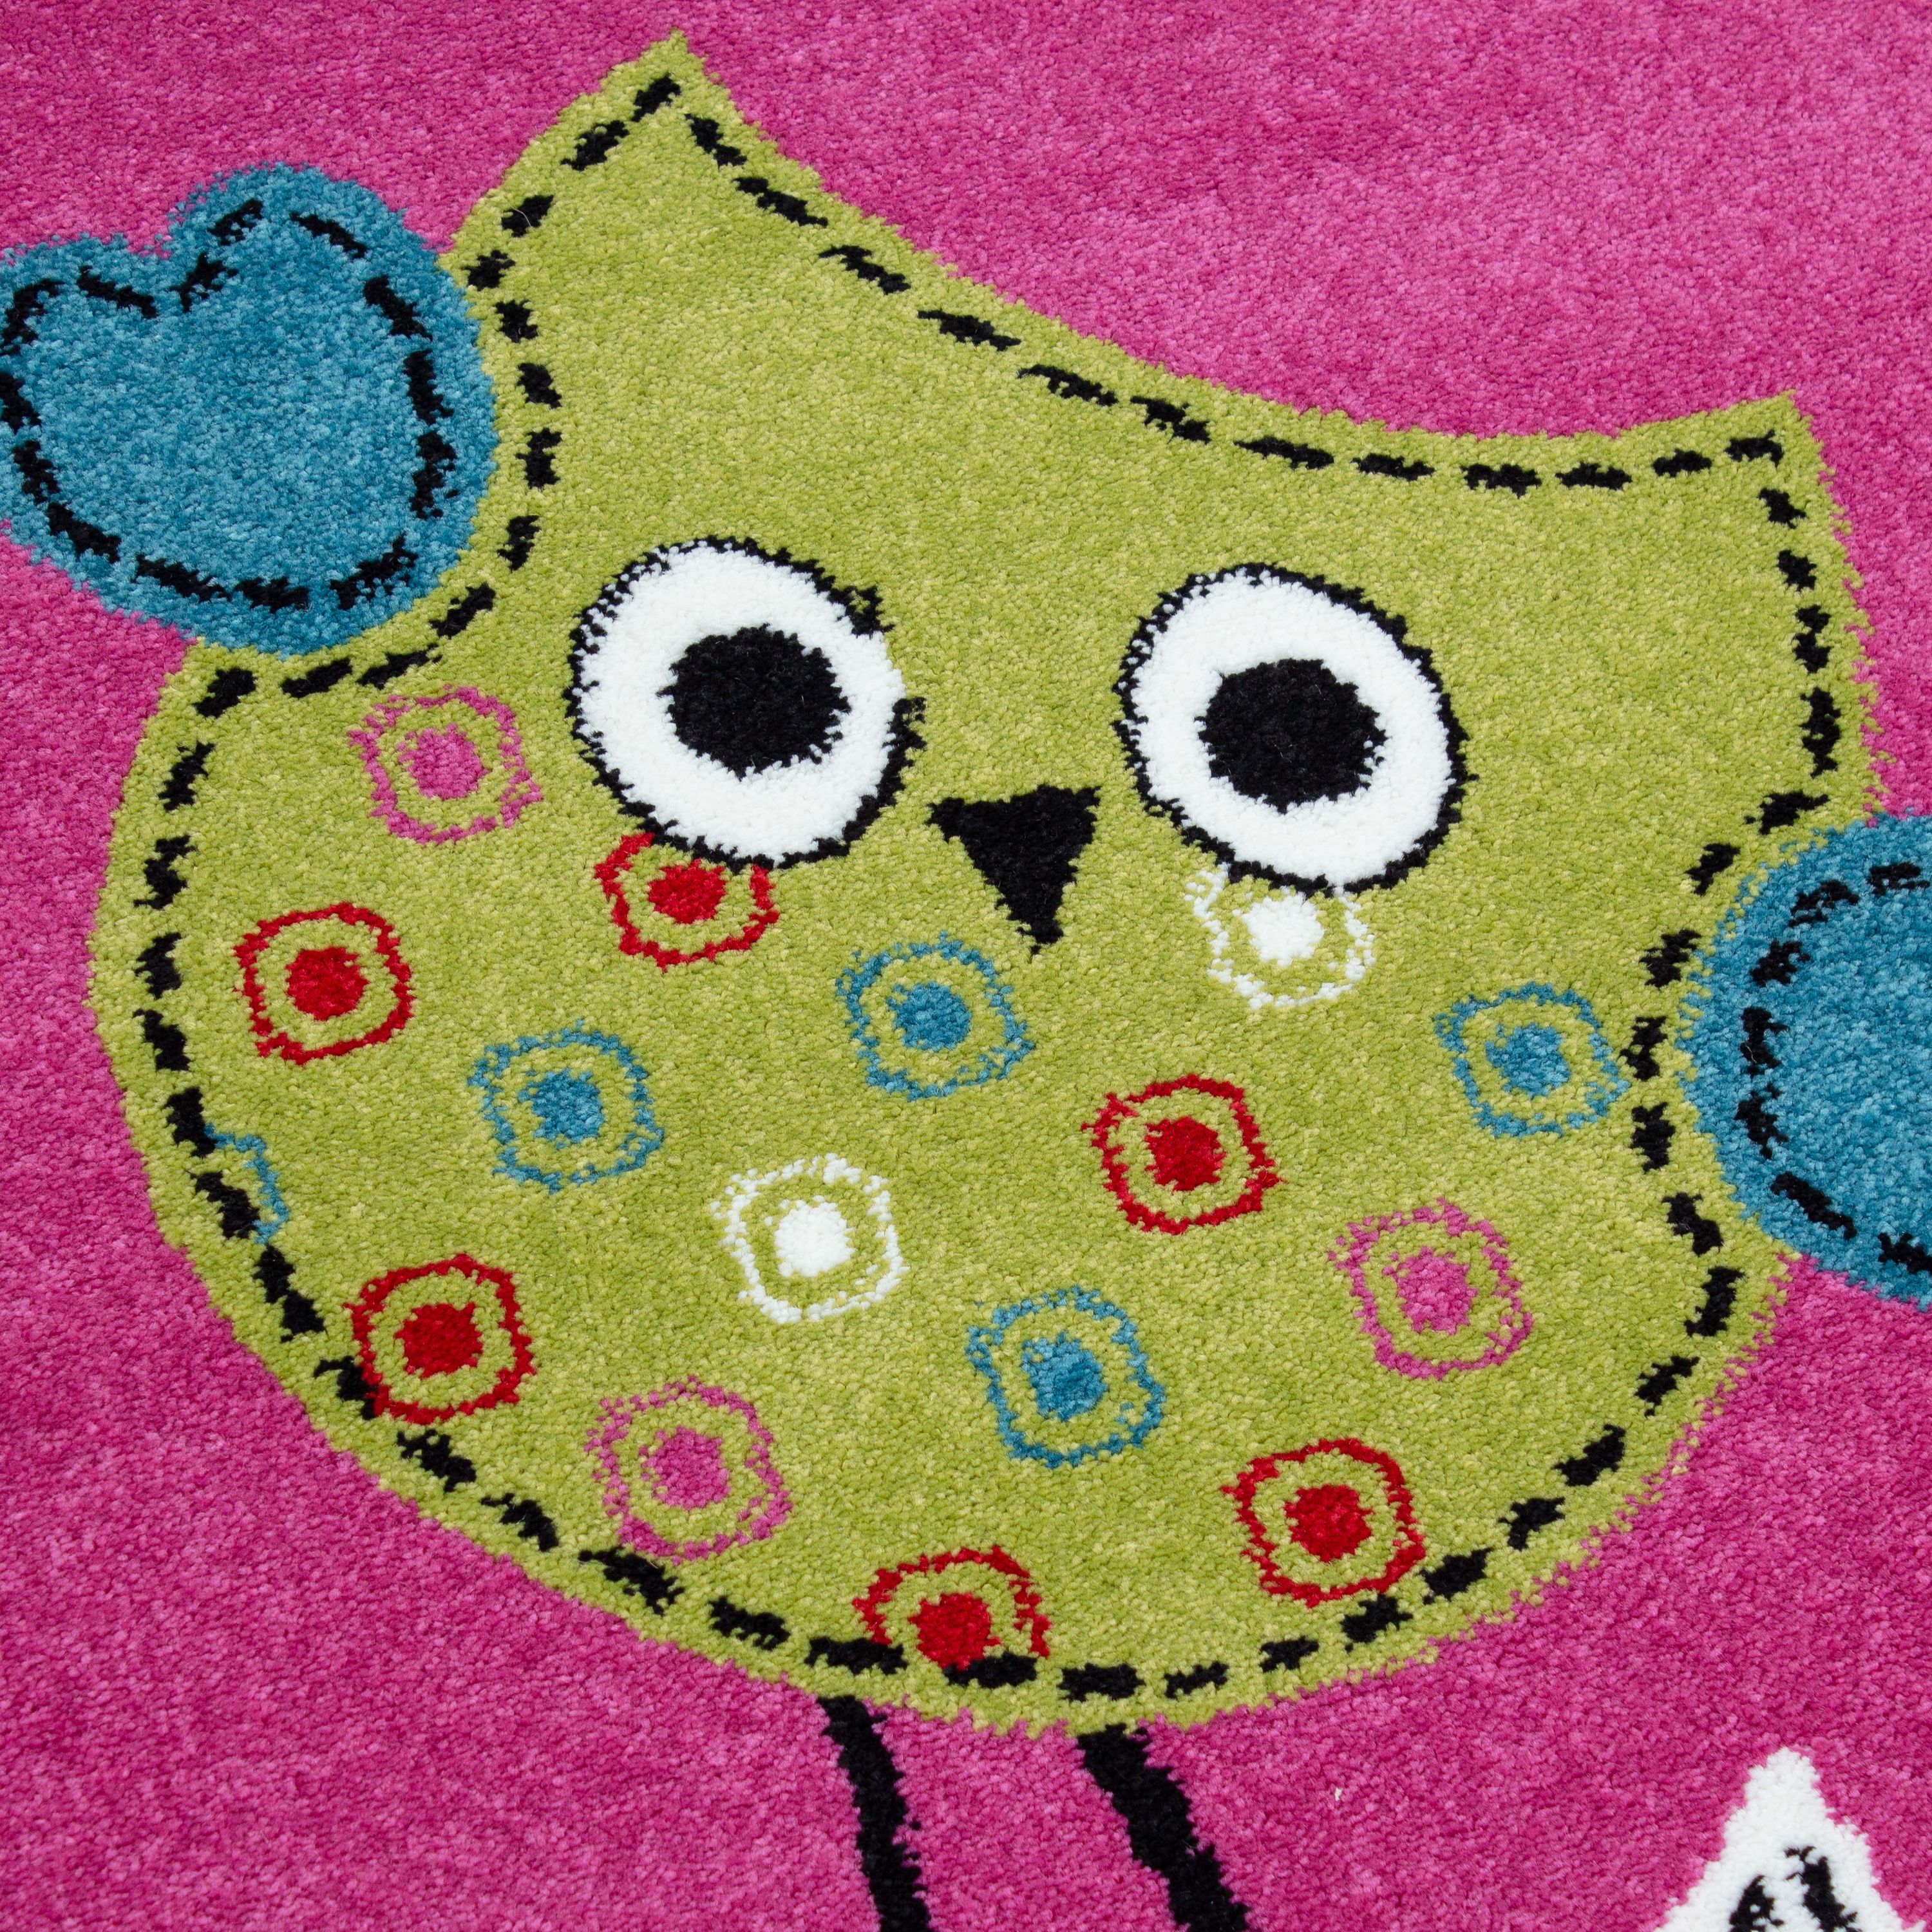 Kinderteppich Kurzflor Eule Design Kinderzimmer Pink meliert viele Größen